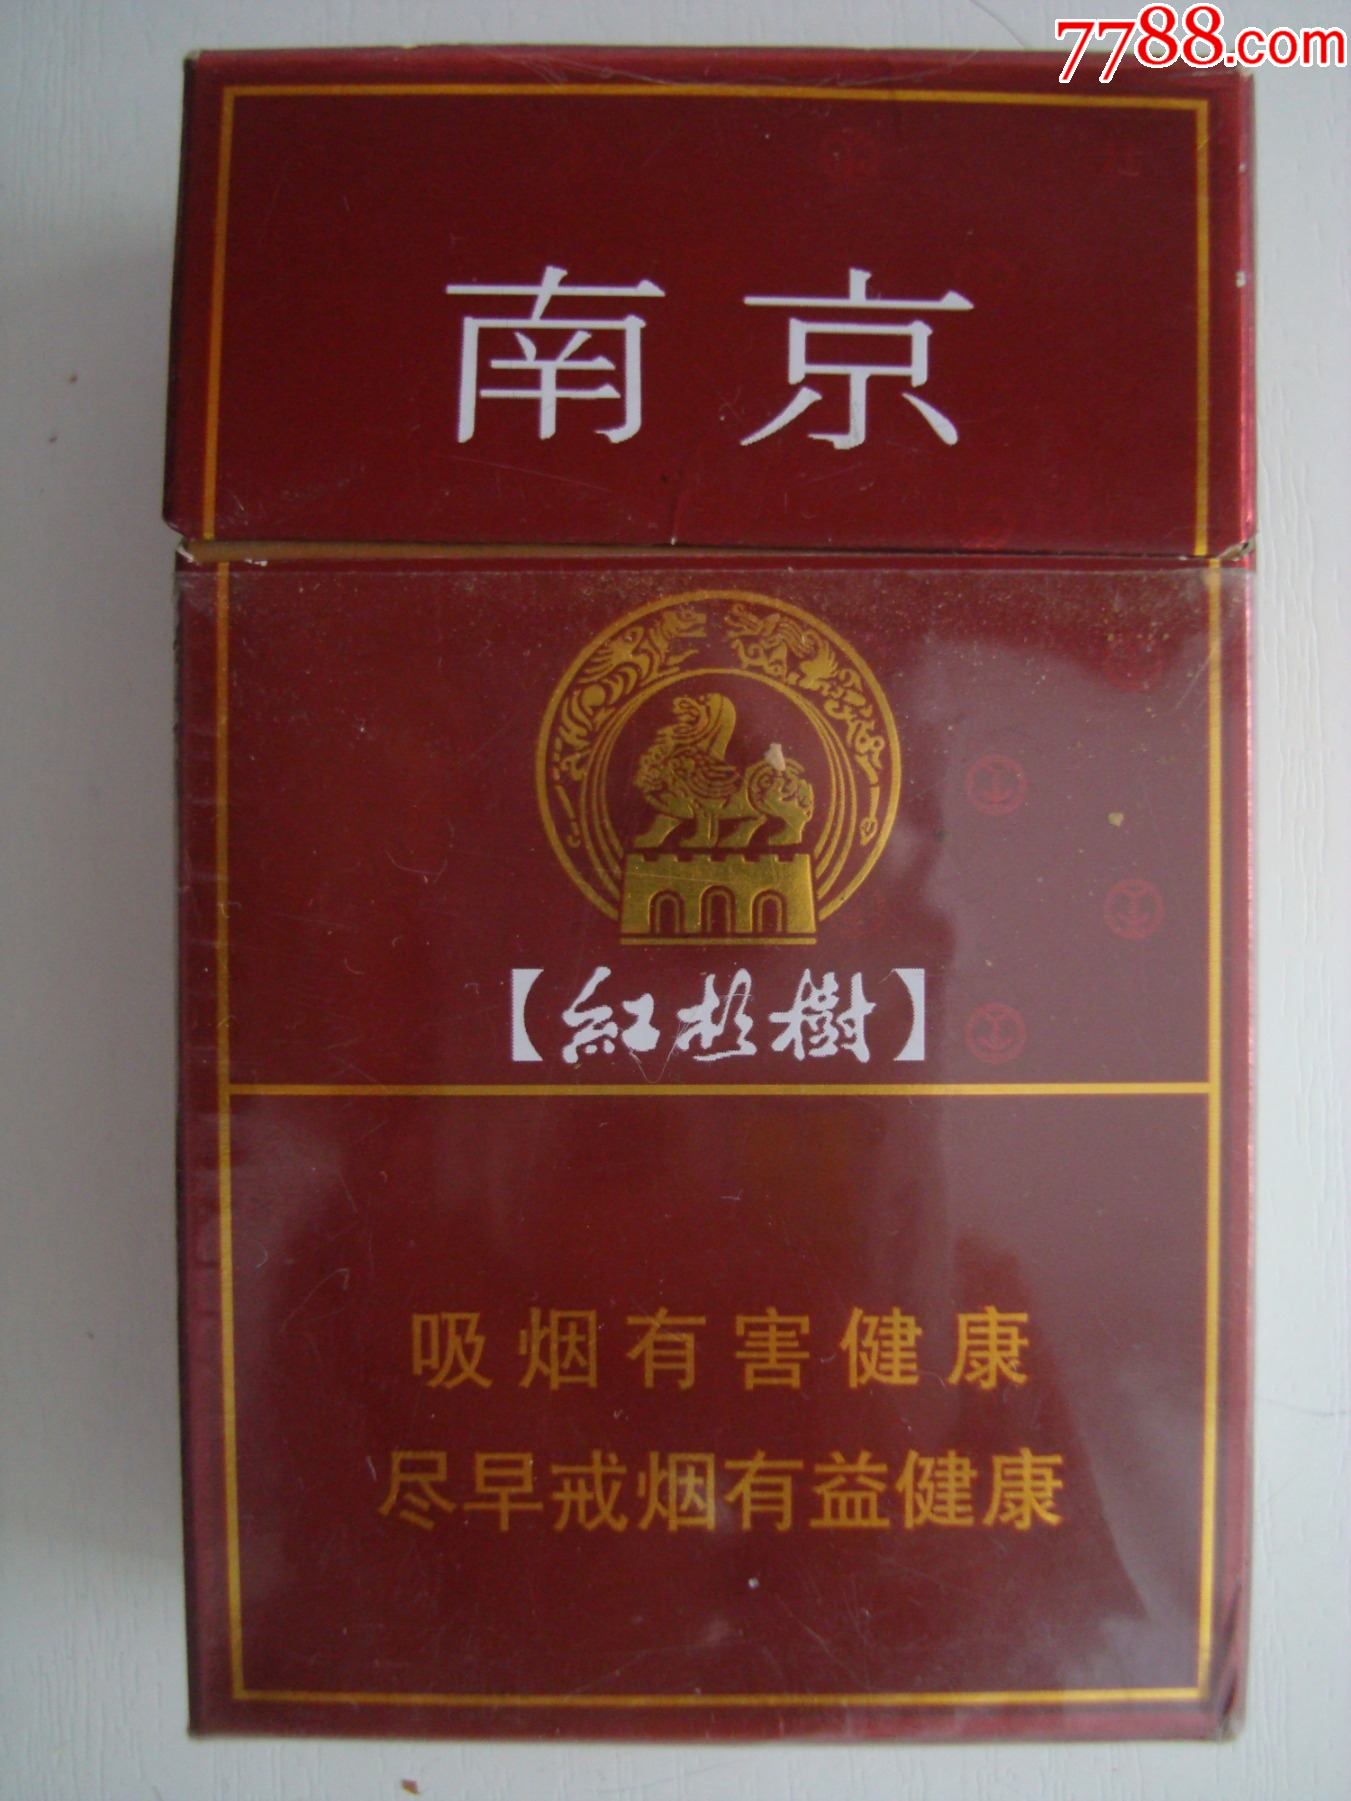 南京红杉树香烟多少钱图片